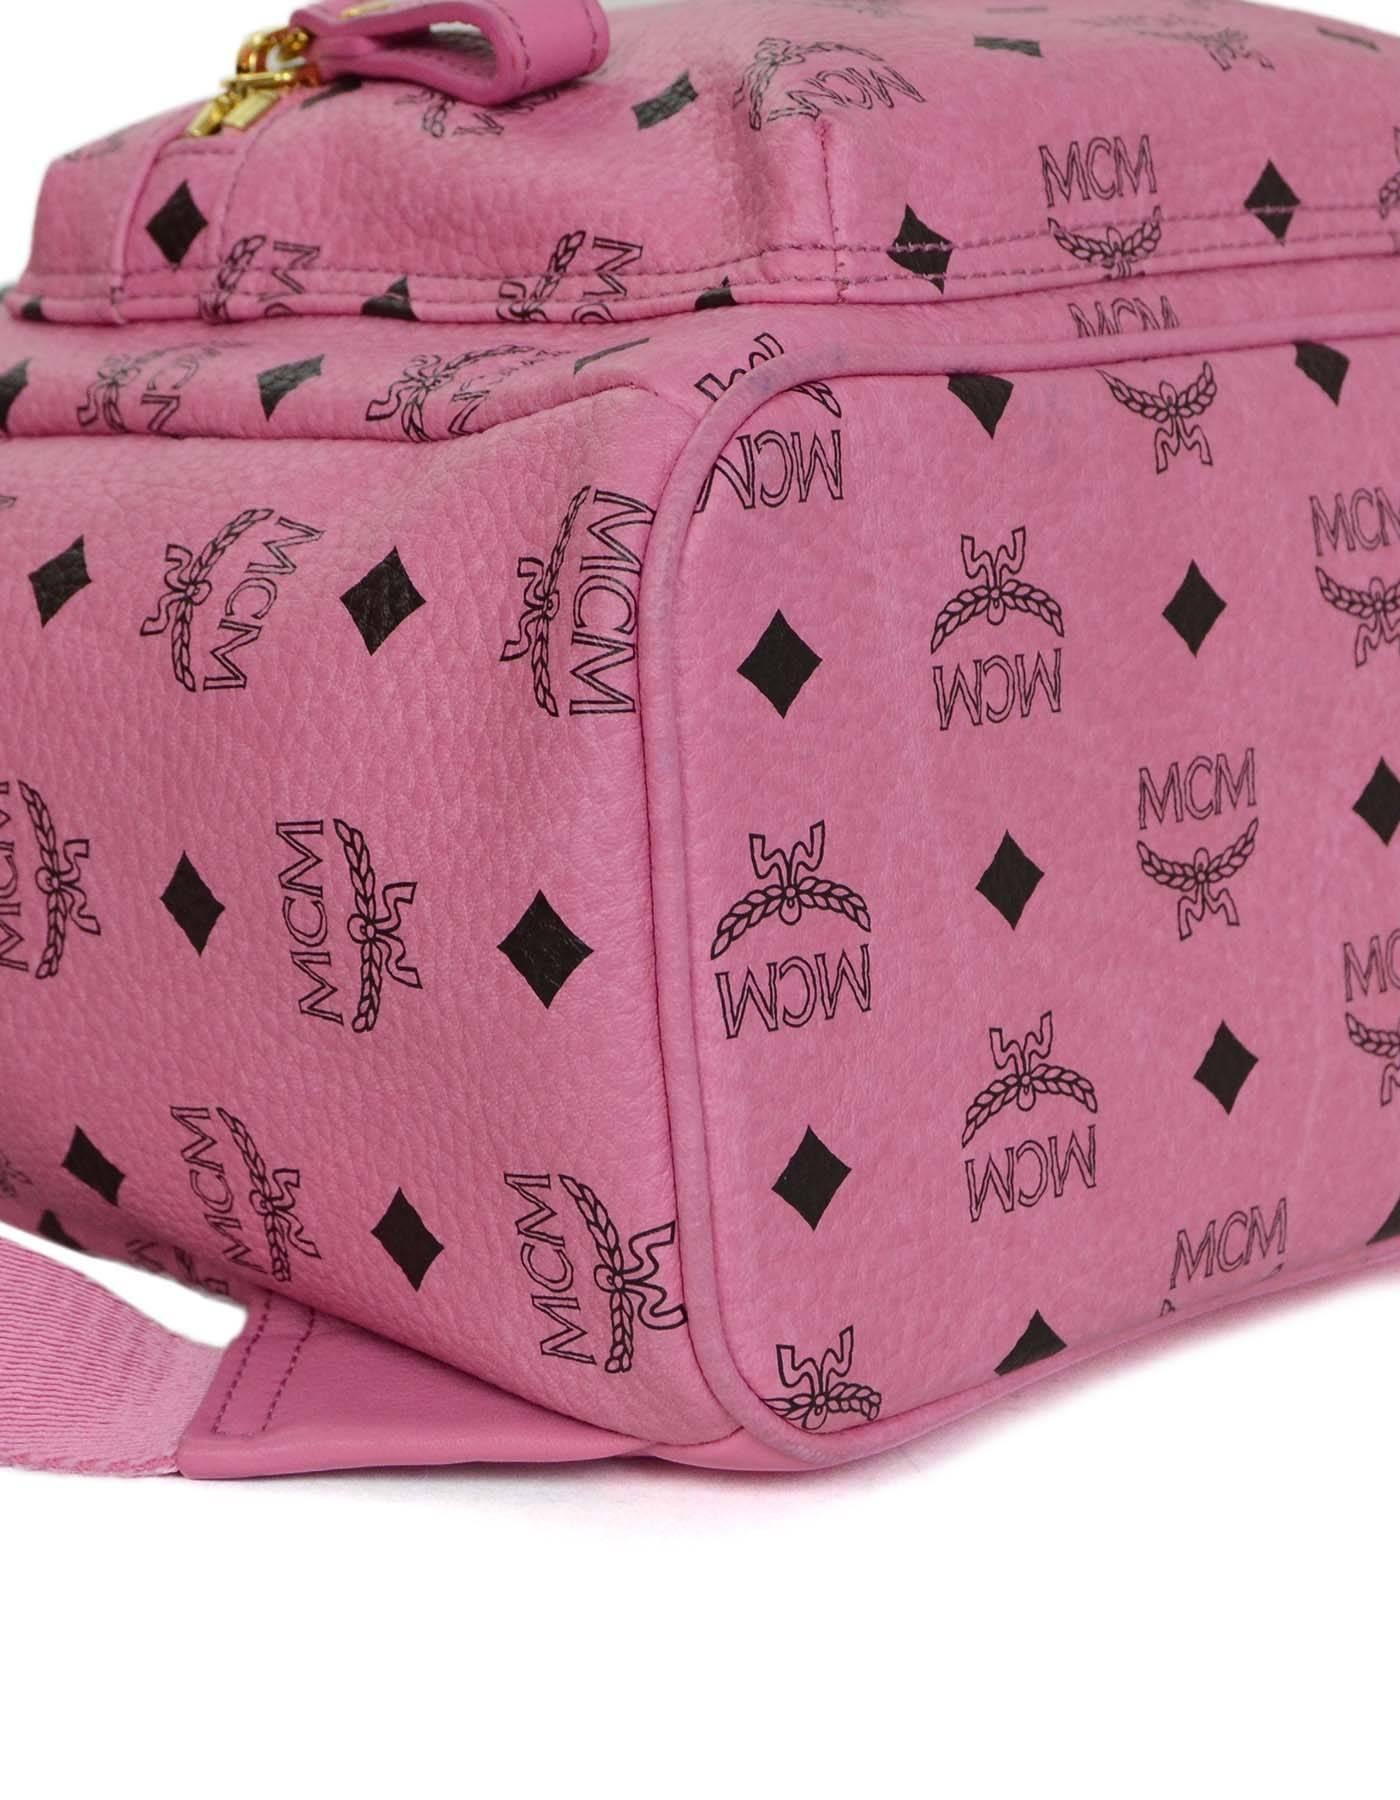 mcm pink studded backpack